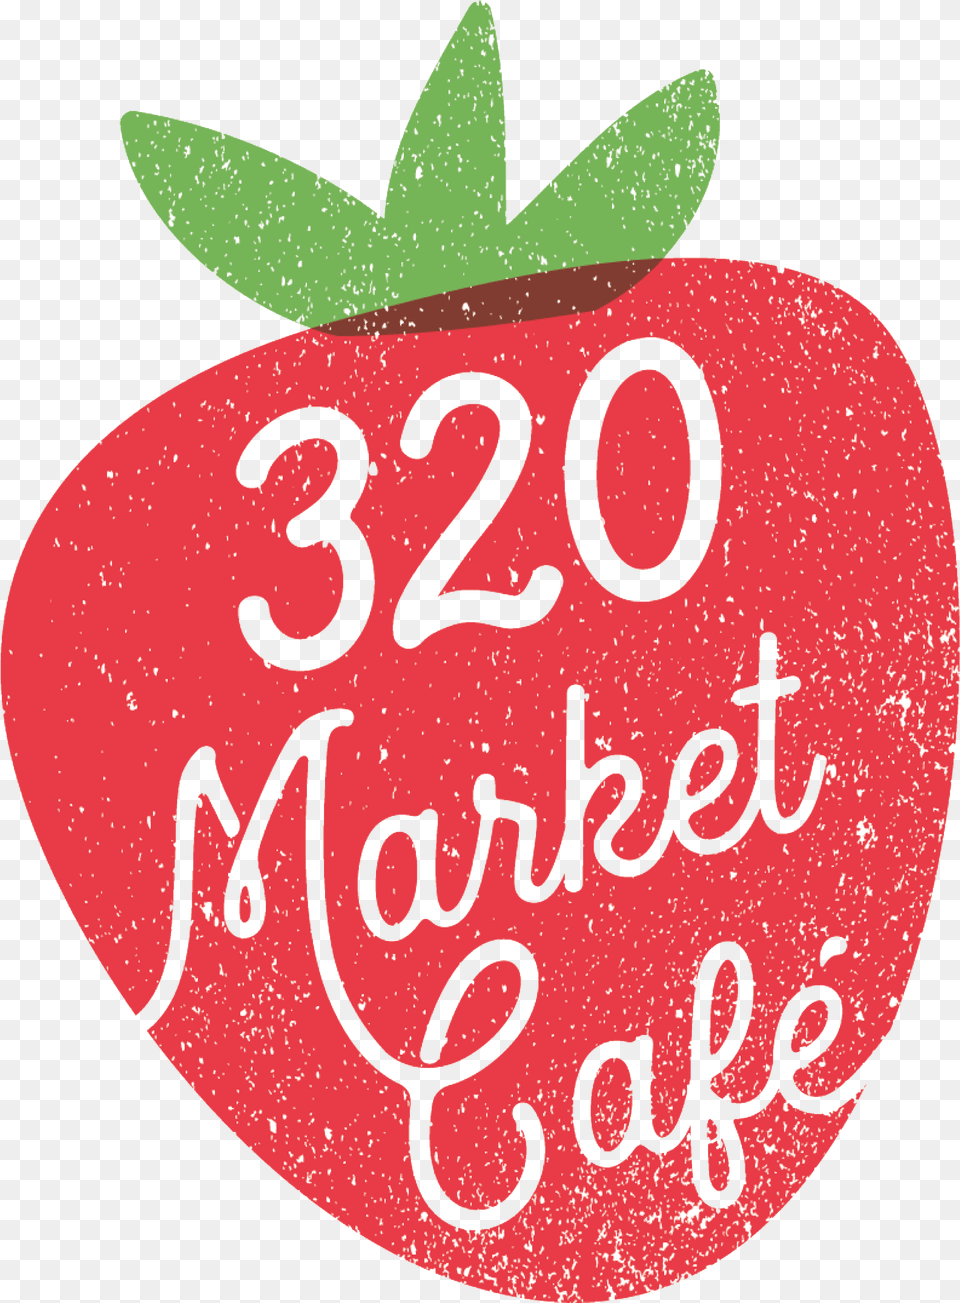 Market Caf 320, Berry, Food, Fruit, Plant Png